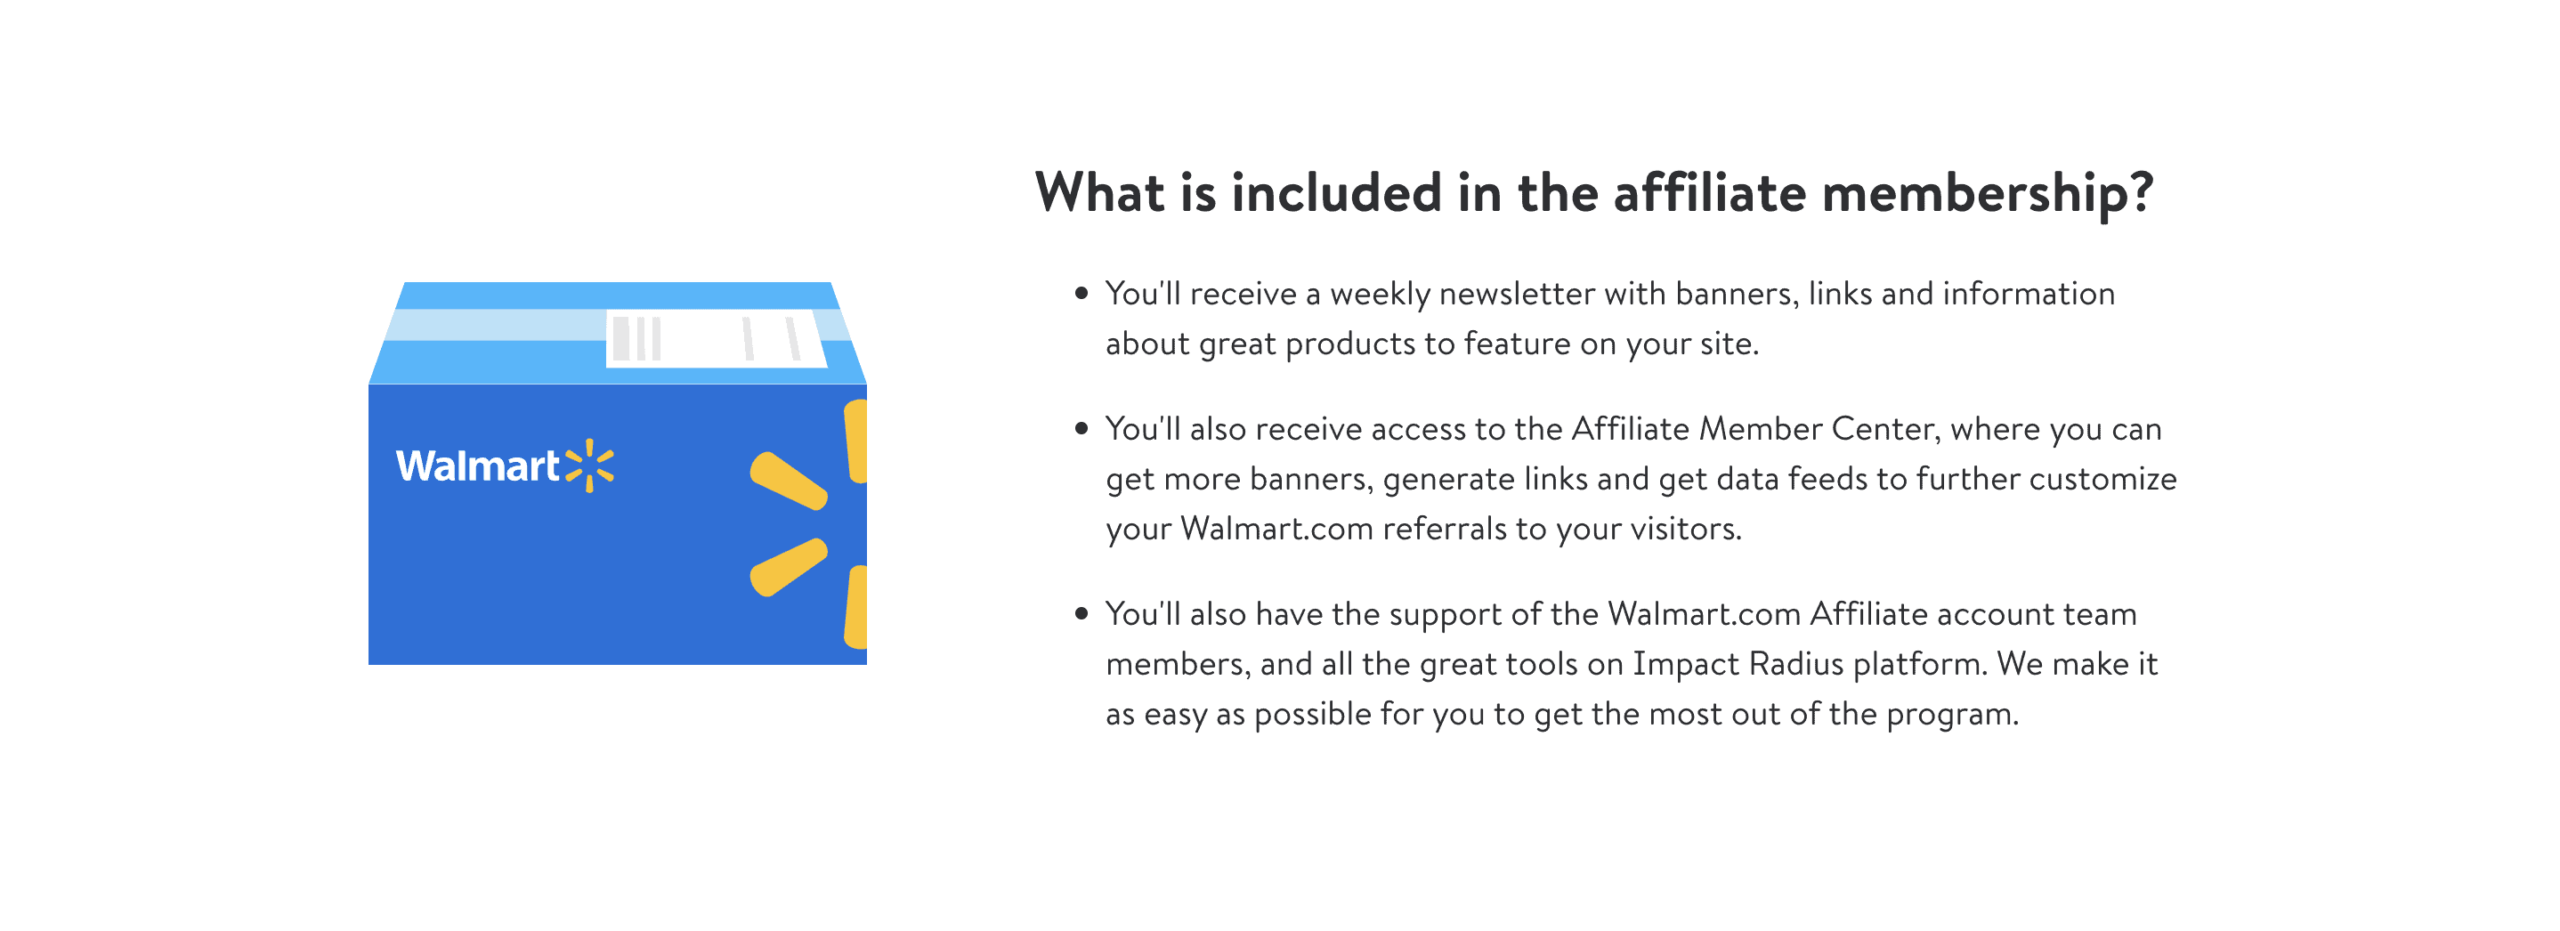 Walmart affiliate membership